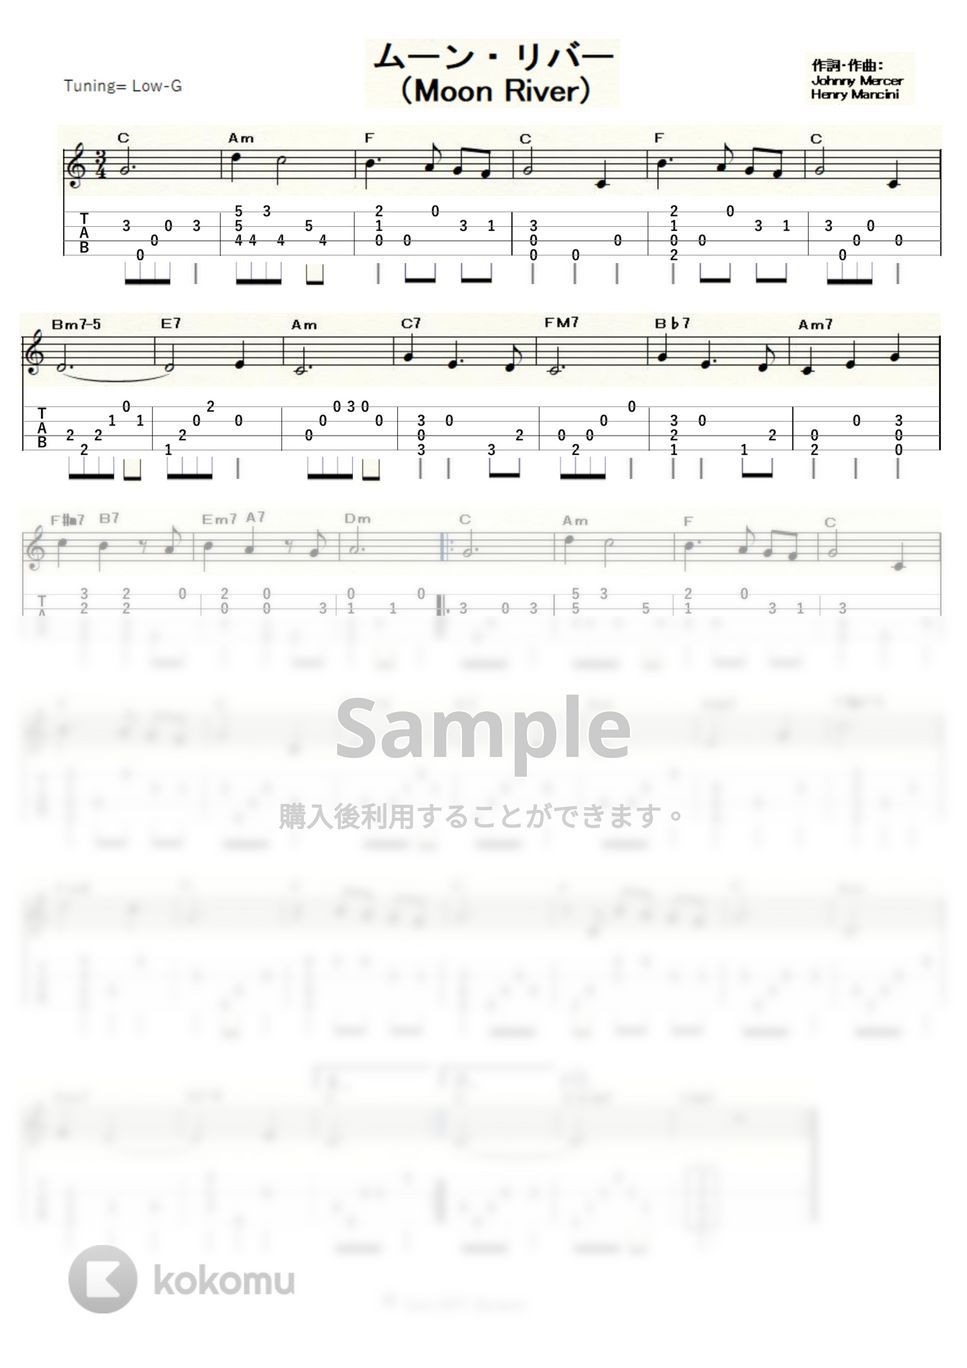 アンディ・ウイリアムス - ムーンリバー (ｳｸﾚﾚｿﾛ / Low-G / 初～中級) by ukulelepapa